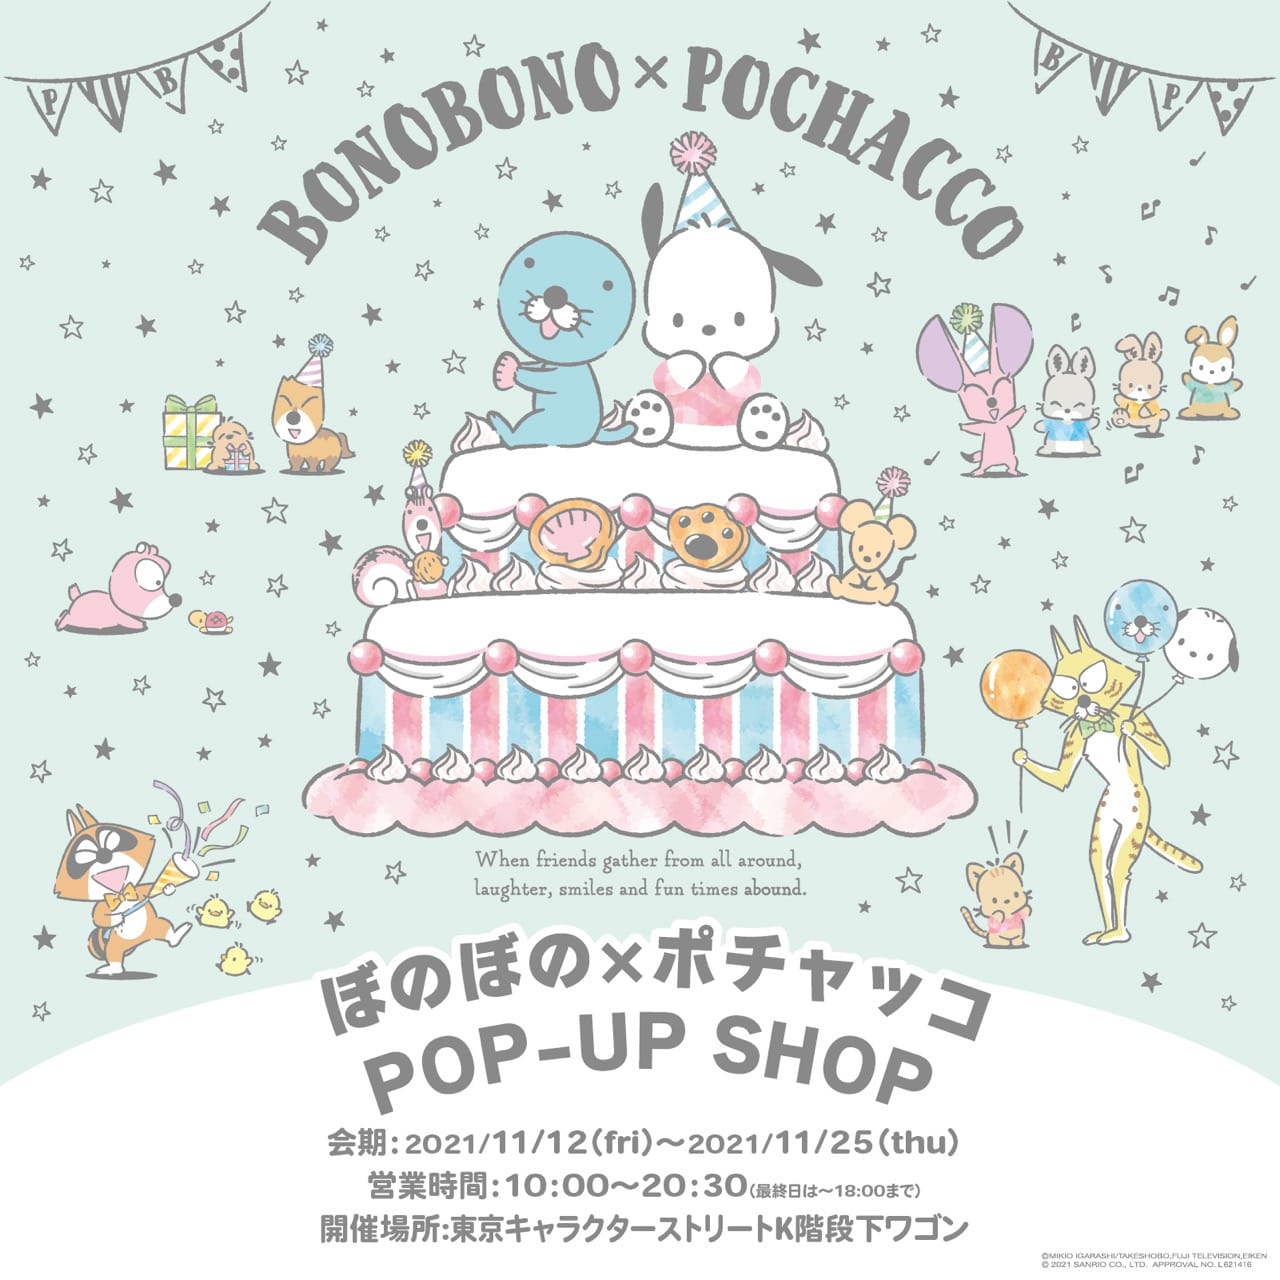 ぼのぼの × ポチャッコ in 東京駅 11月25日までポップアップストア開催!